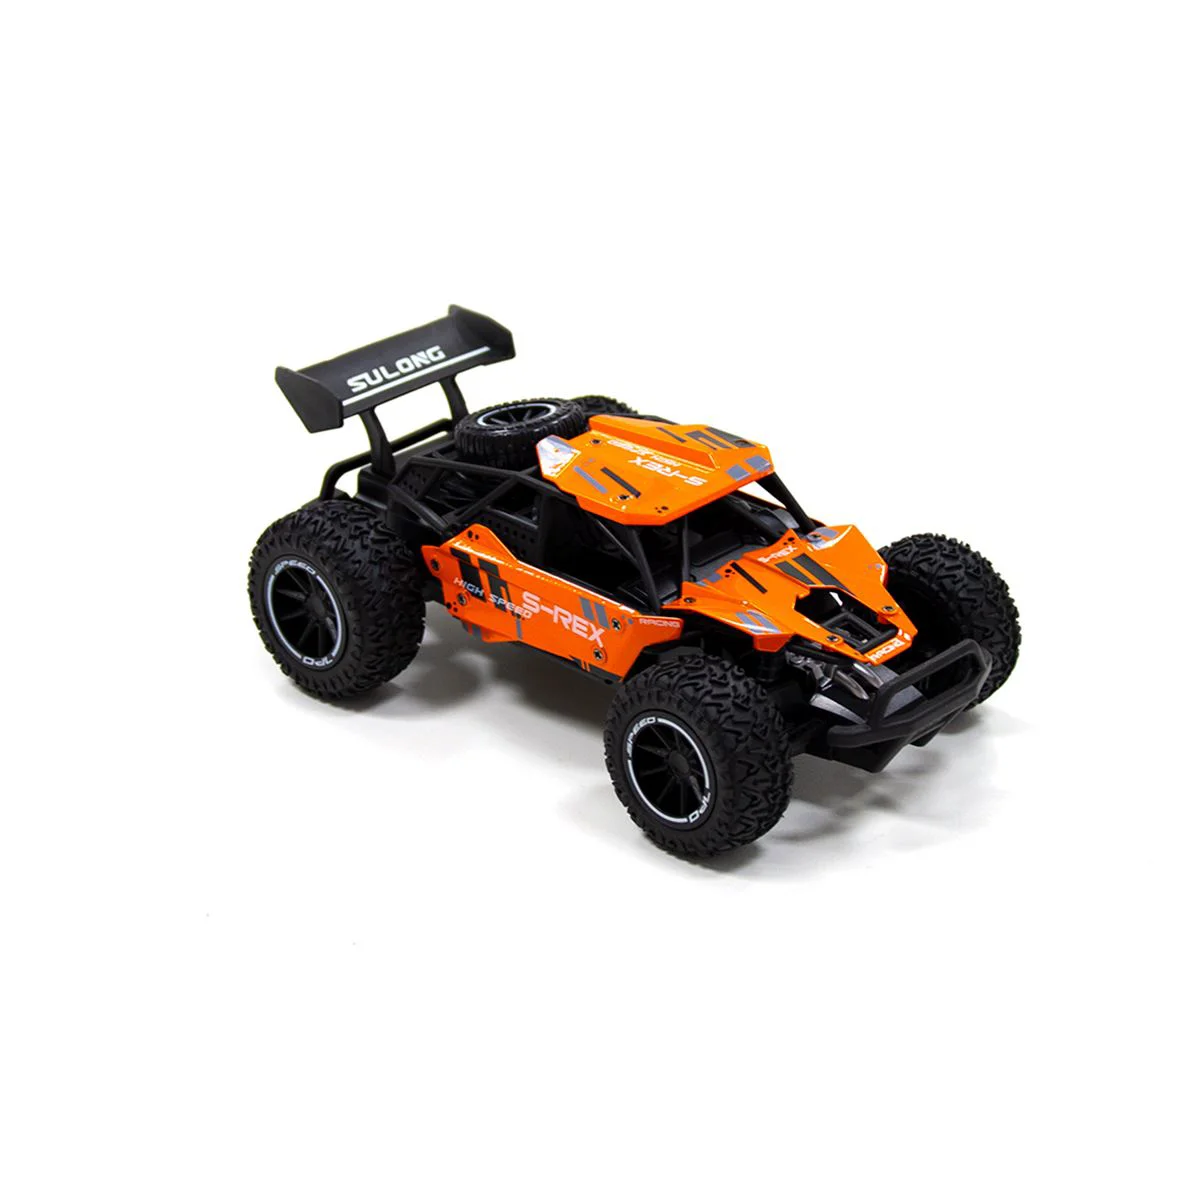 Радиоуправляемый автомобиль Sulong Toys Metal Crawler S-Rex, 1:16